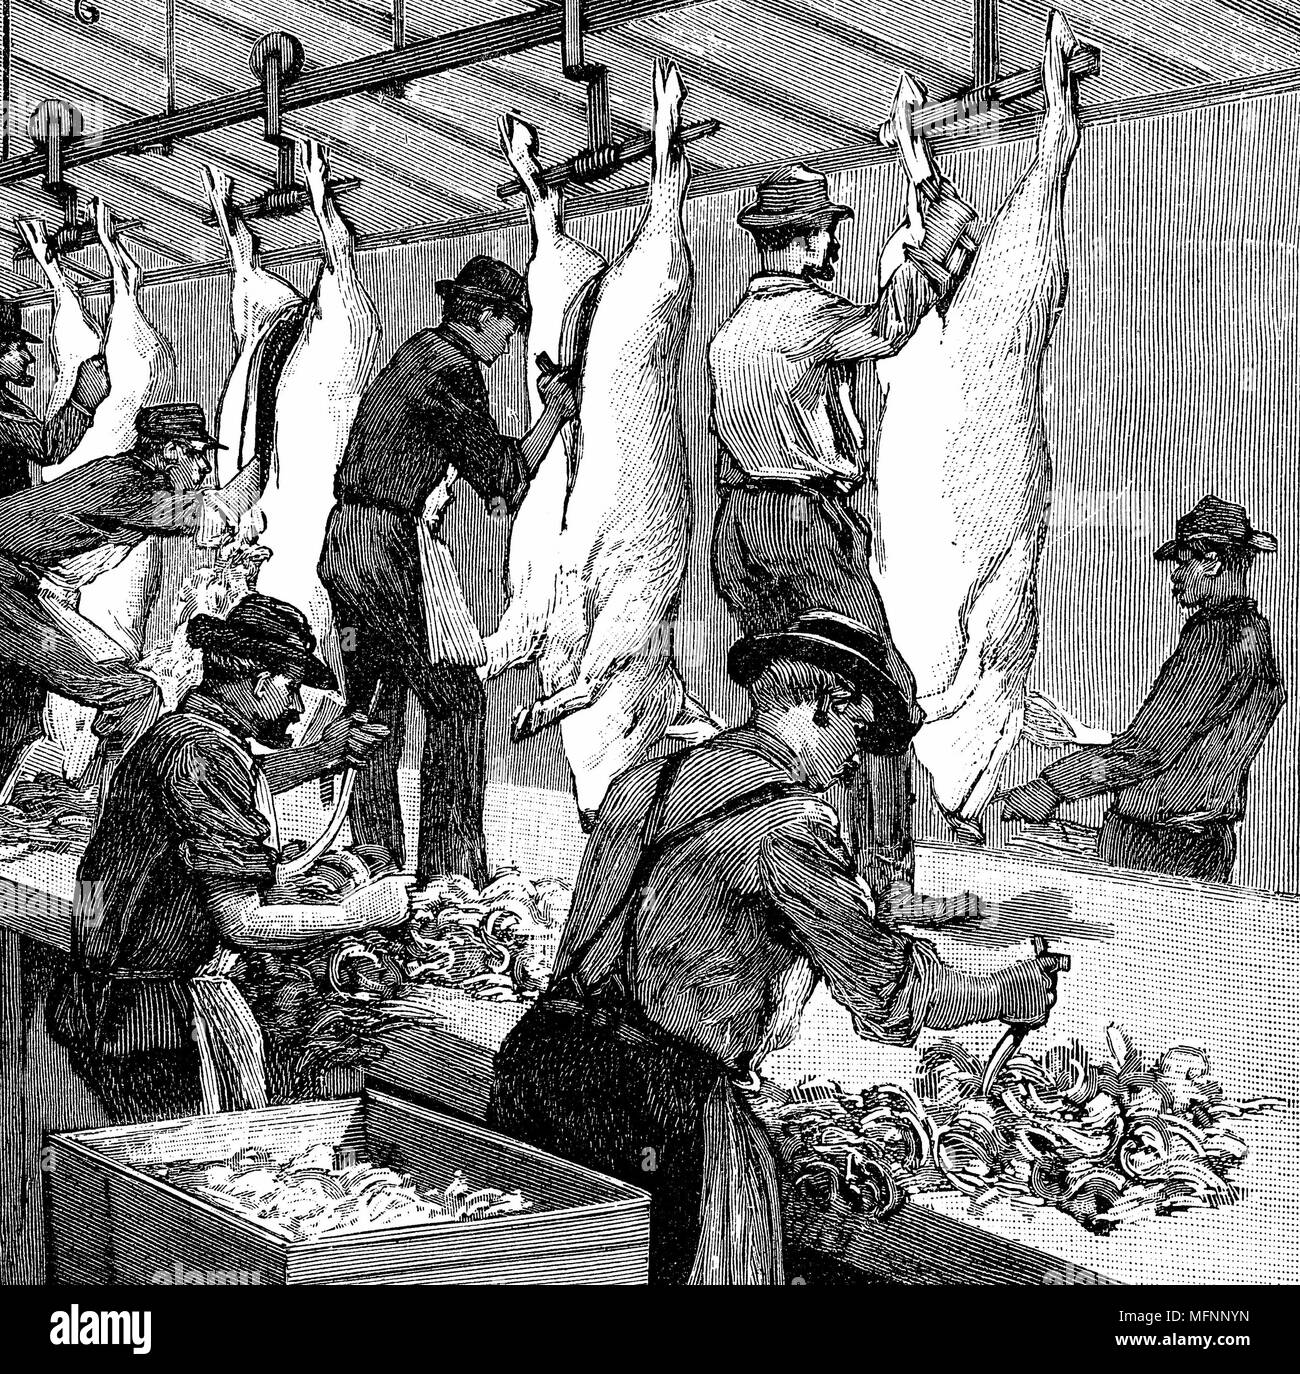 Eine der frühesten Produktionslinien: Armour Firma Schwein Schlachthof, Chicago. Schweine ging bis Rampe von Gebäude nach oben, dann verarbeitet und als fertige Schlachtkörper entstanden waren. Ausweiden Schlachtkörper. Holzstich Paris 1892. Stockfoto